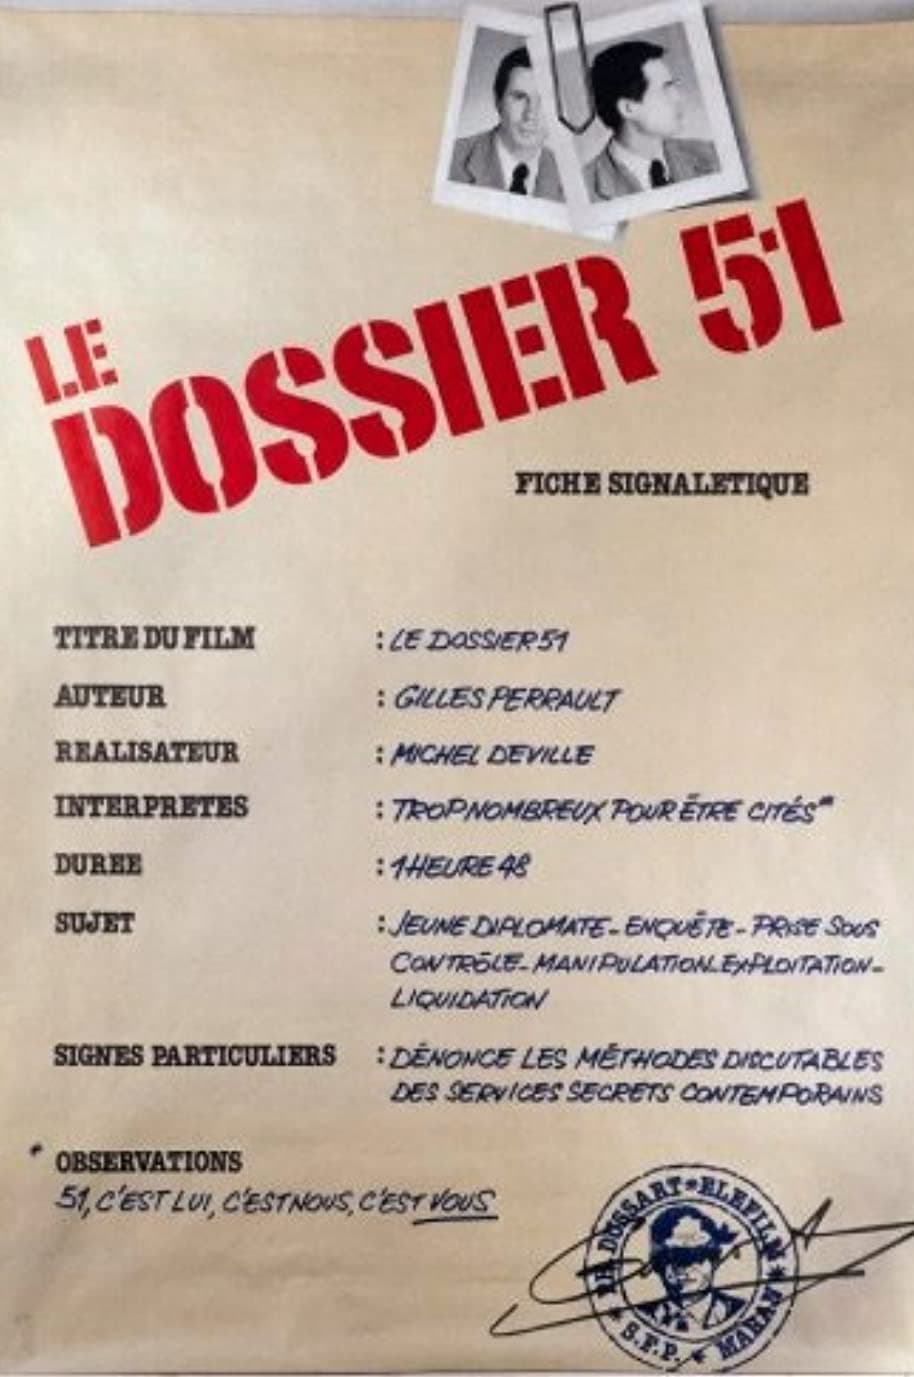 Dossier 51 (1978)